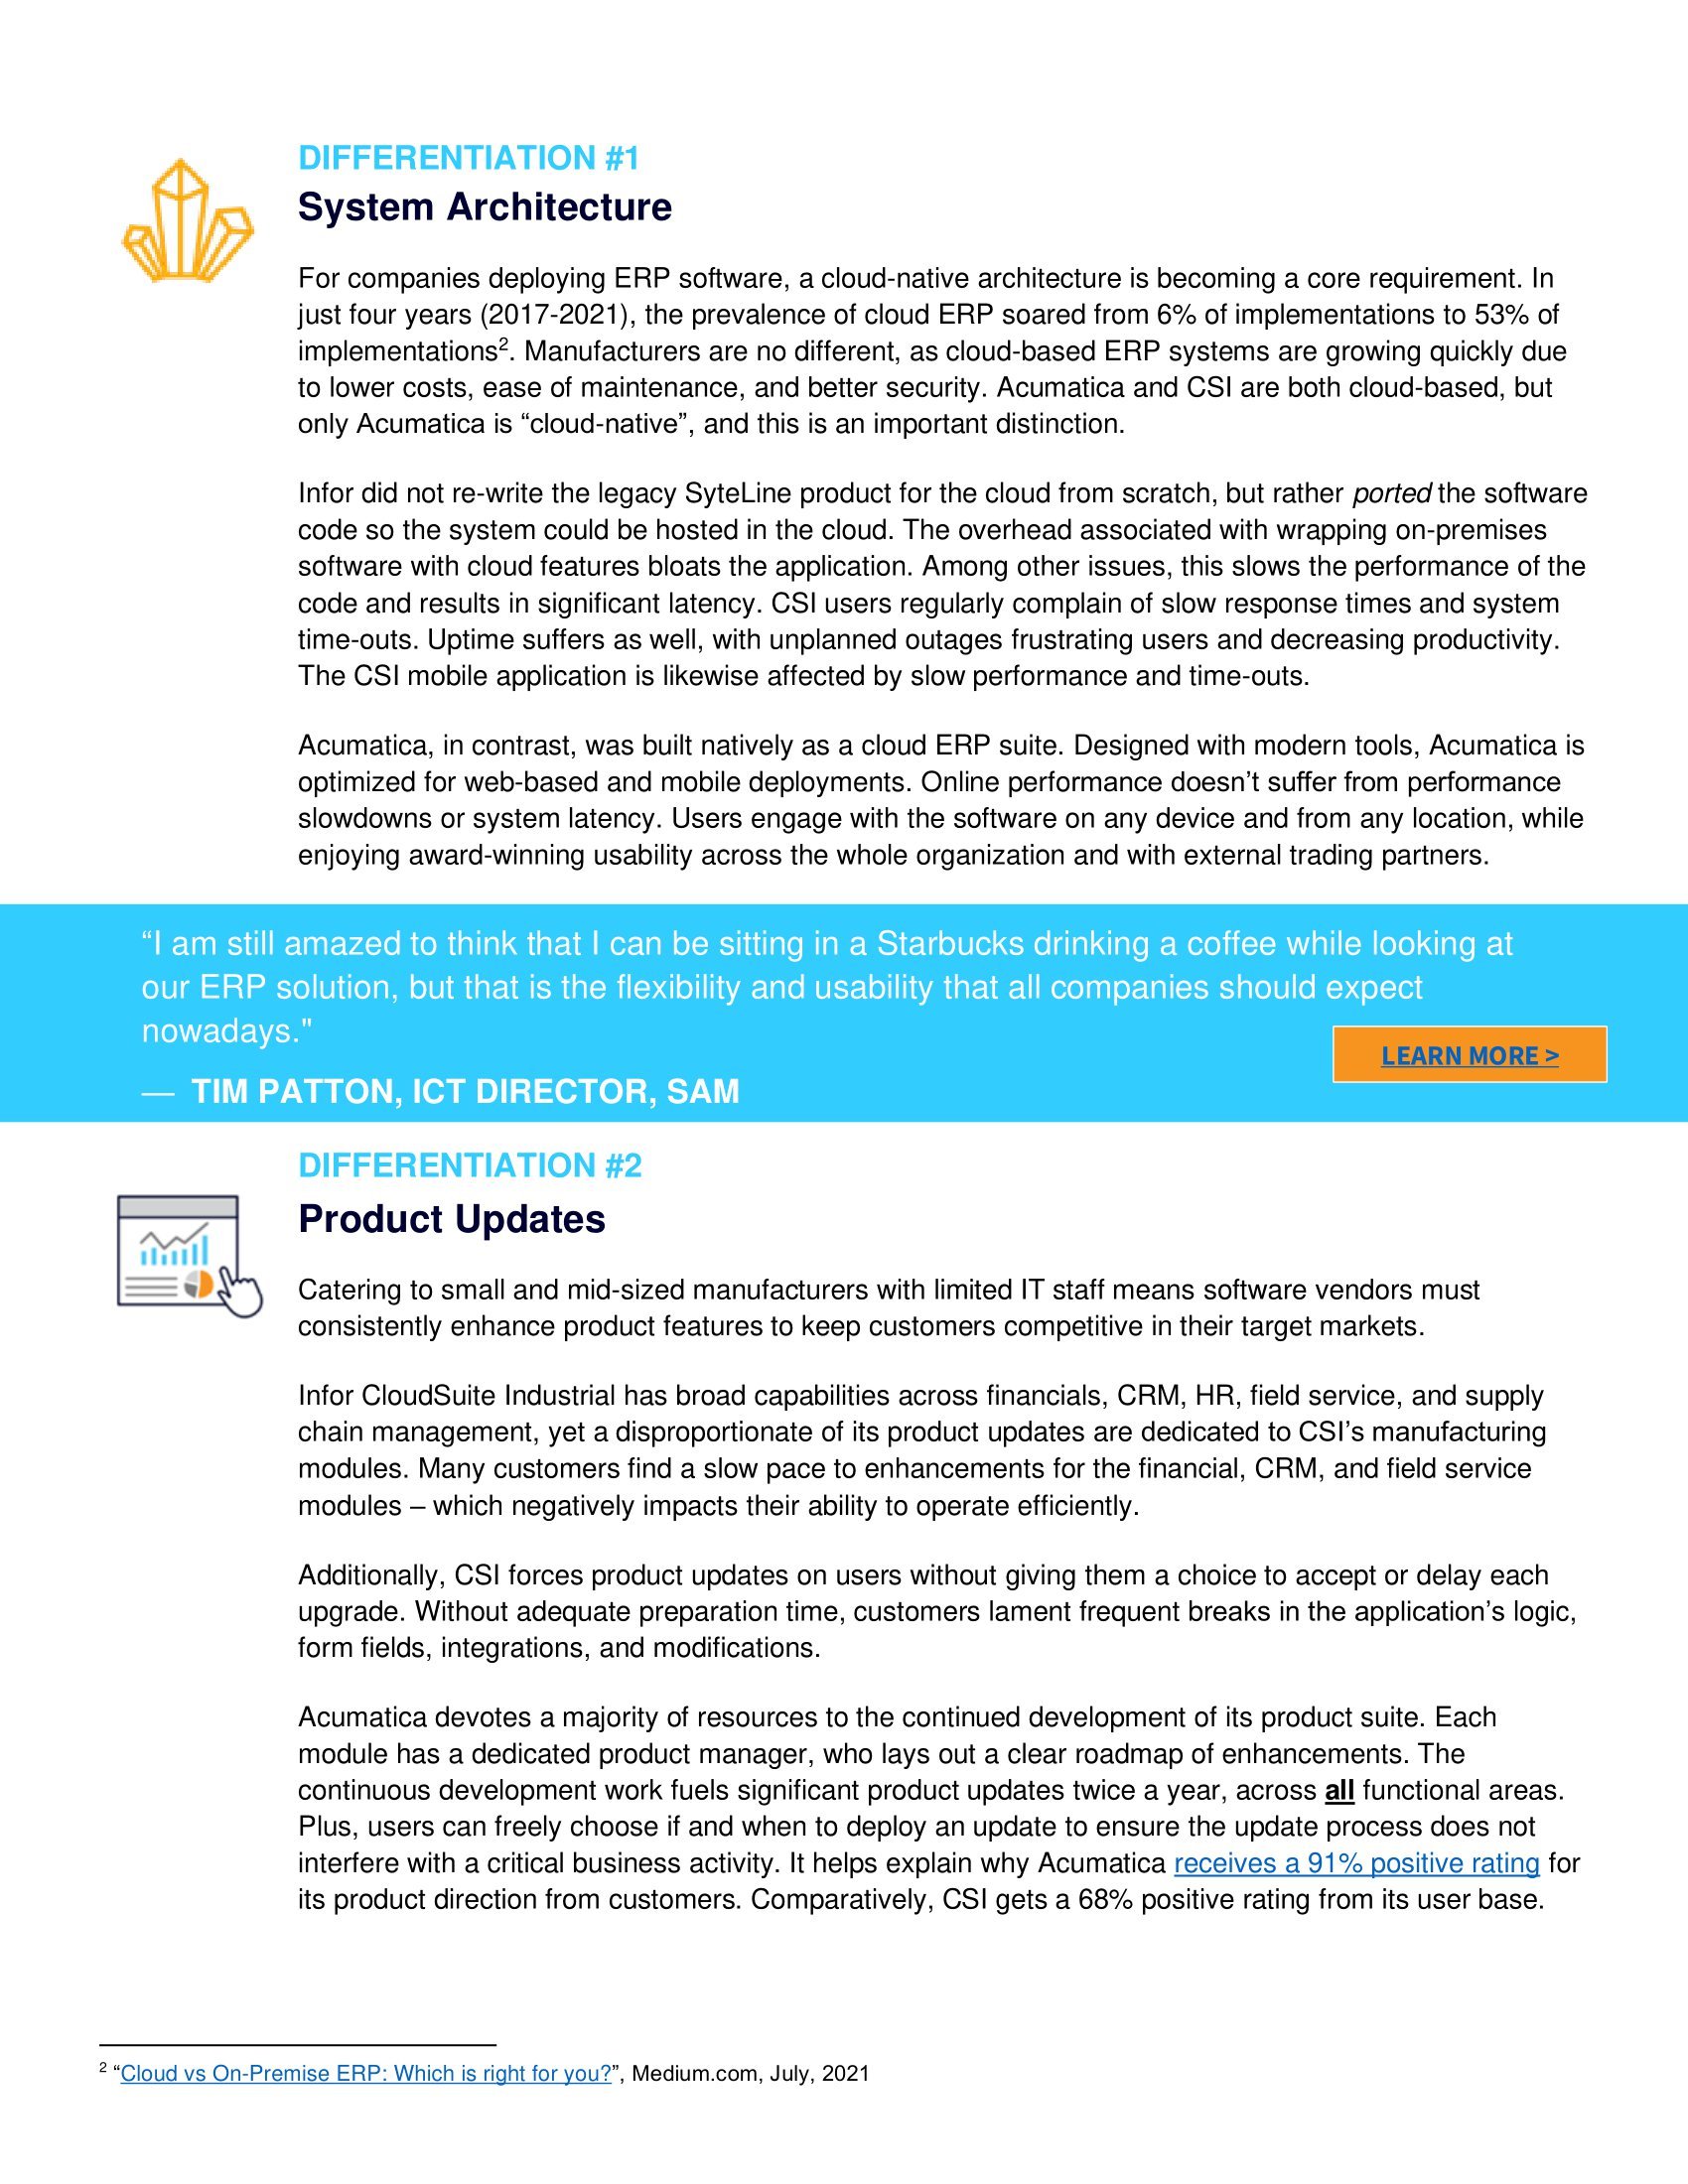 Acumatica vs. Infor CloudSuite Industrial: Analizando las diferencias para los fabricantes, página 1